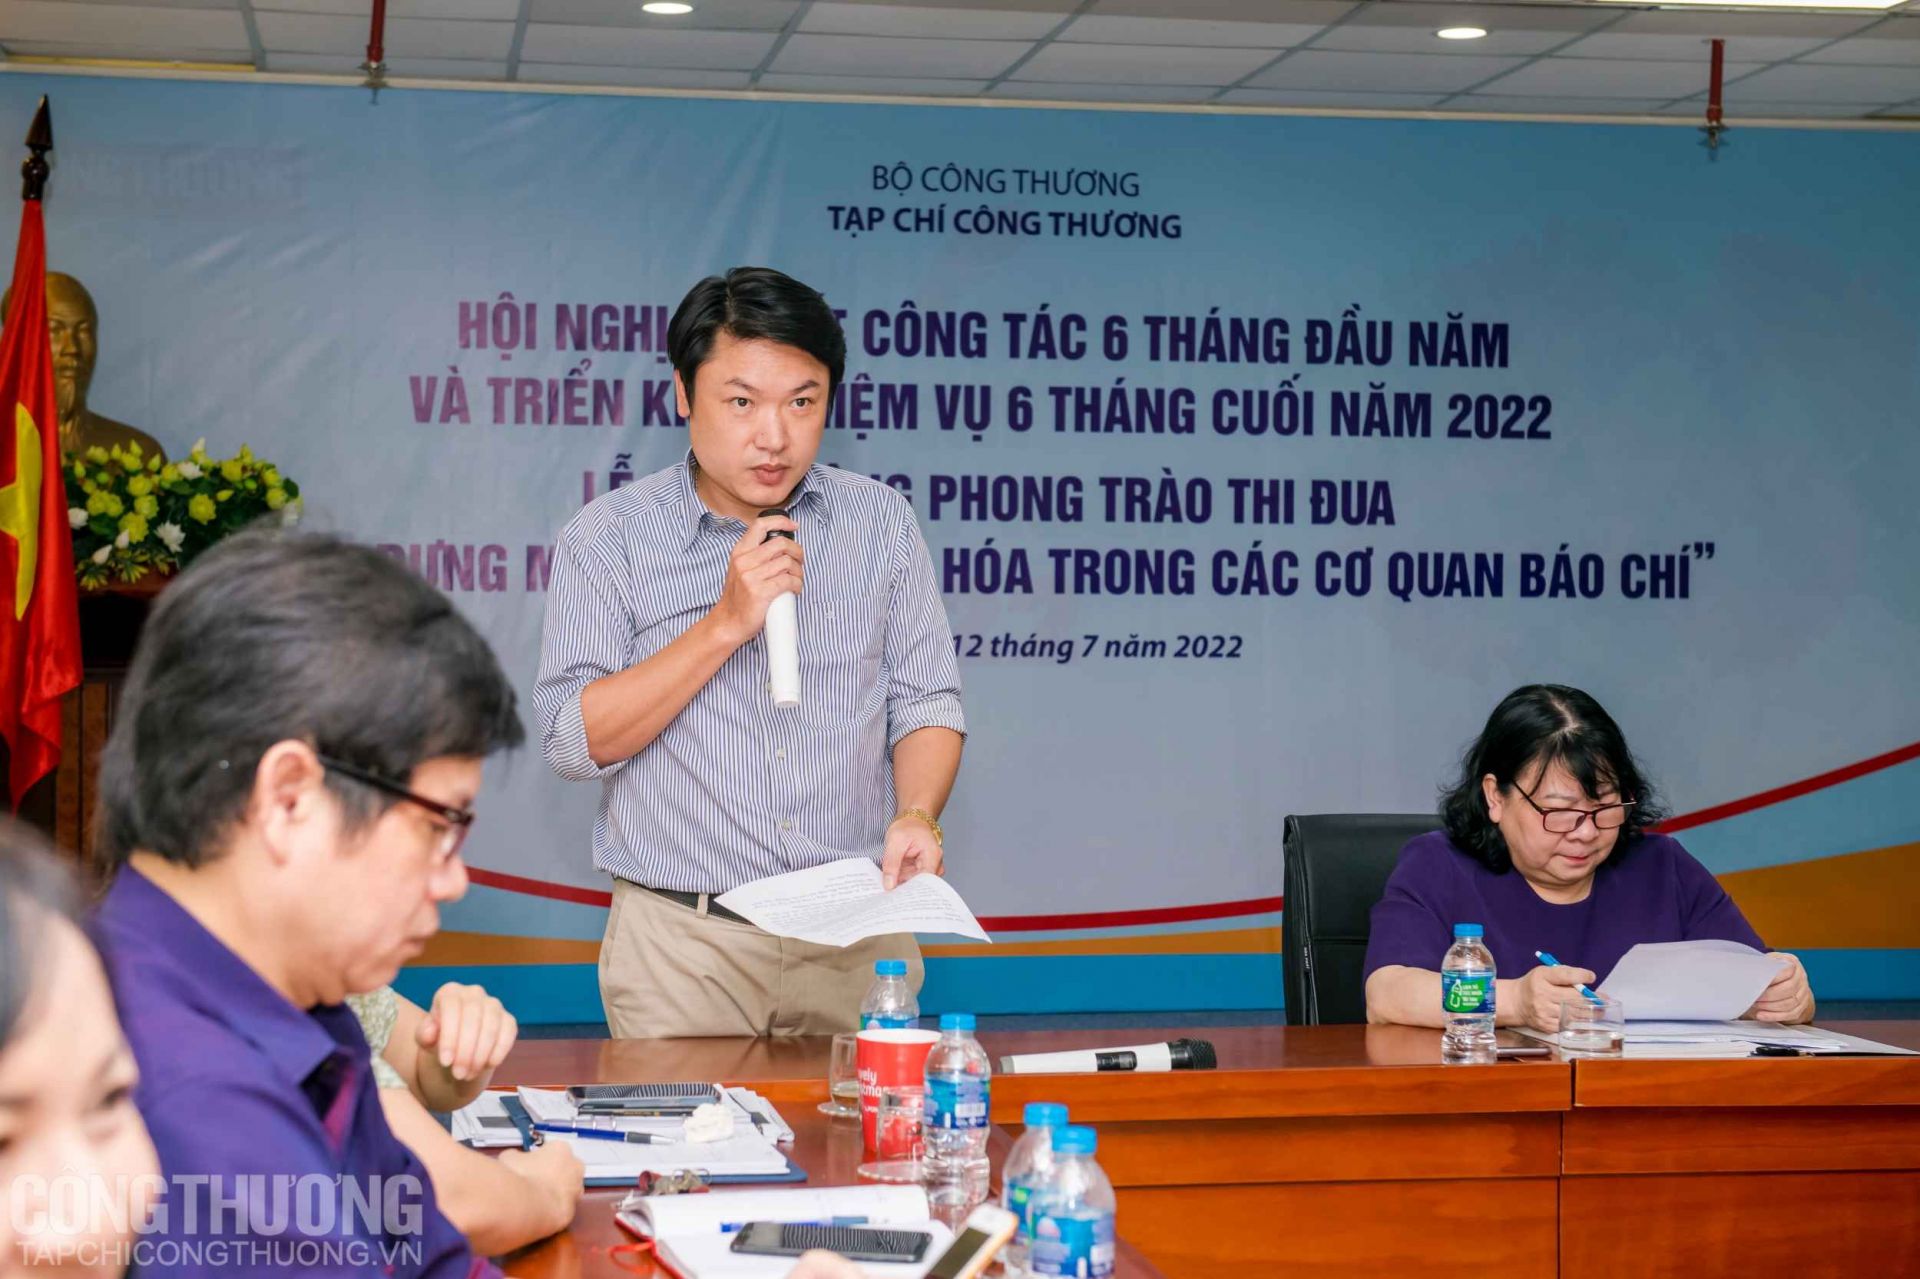 Chủ tịch Công đoàn Tạp chí Công Thương Nguyễn Thái Linh phát biểu kêu gọi các phóng viên Tạp chí tiếp tục trau dồi kiến thức, nâng cao trình độ nghiệp vụ, rèn luyện bản lĩnh chính trị, nêu cao trách nhiệm xã hội, đạo đức nghề nghiệp